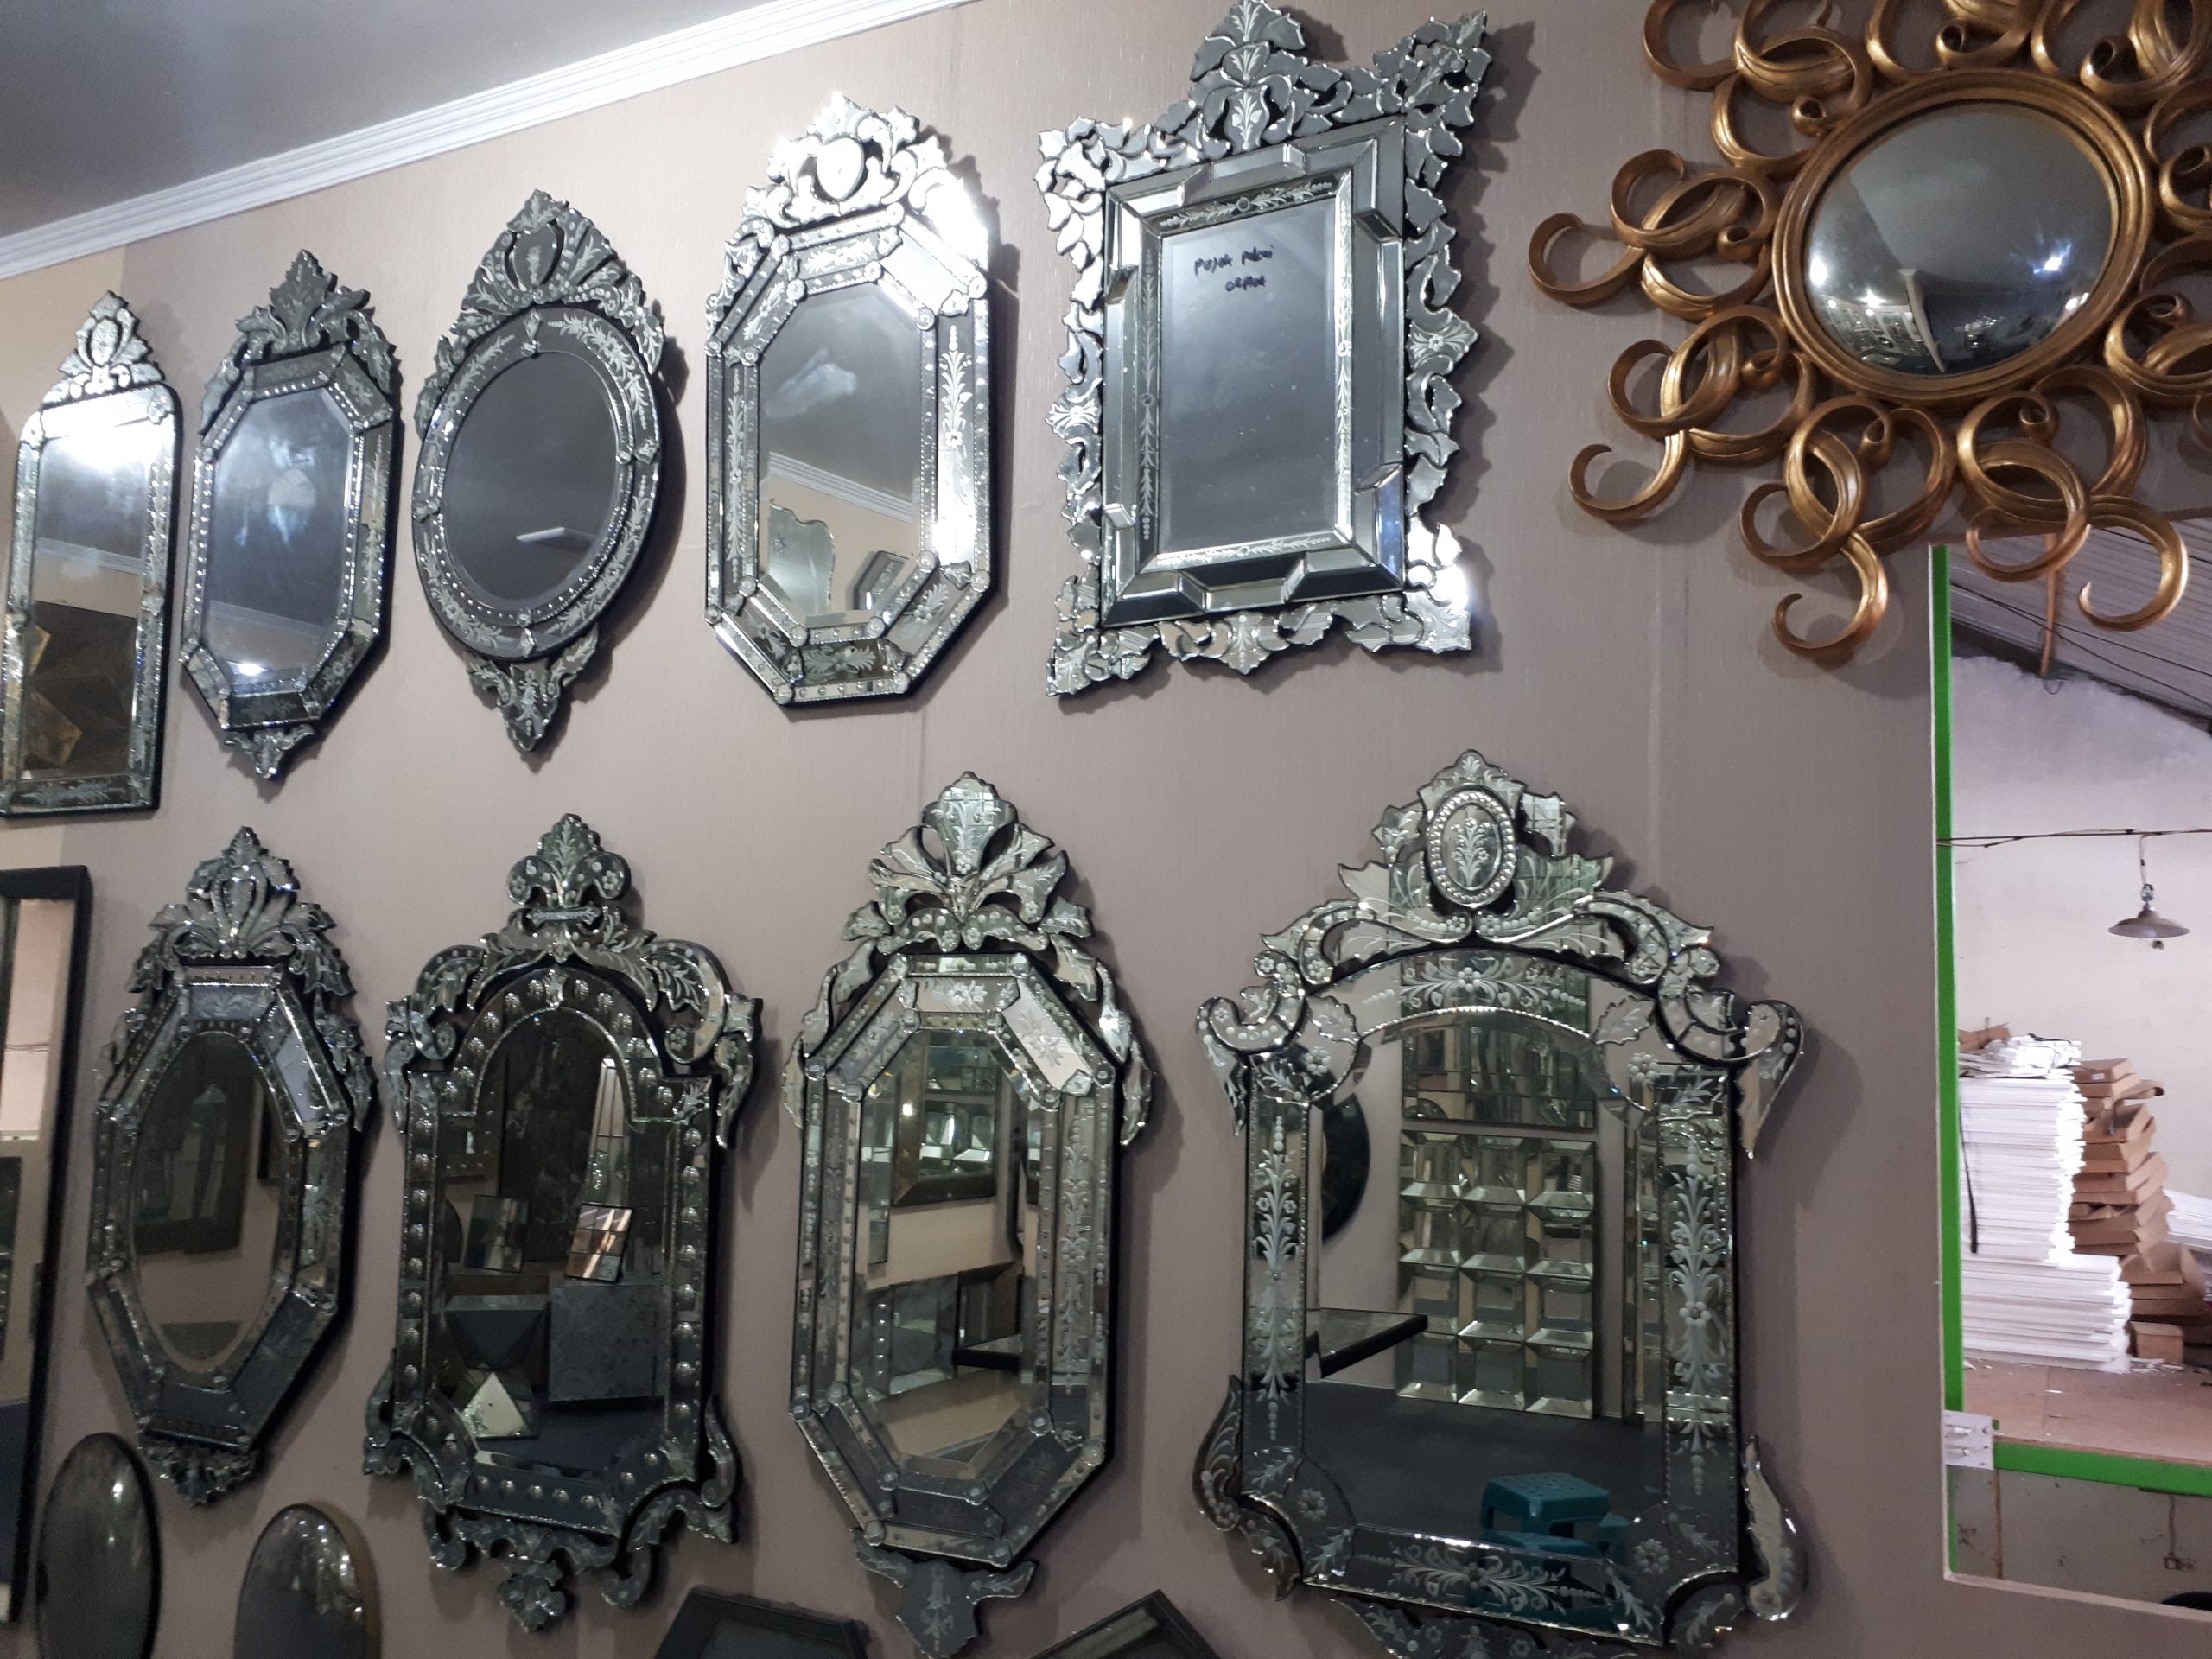 Histoty of Supplier Venetian Mirror in Indonesia.